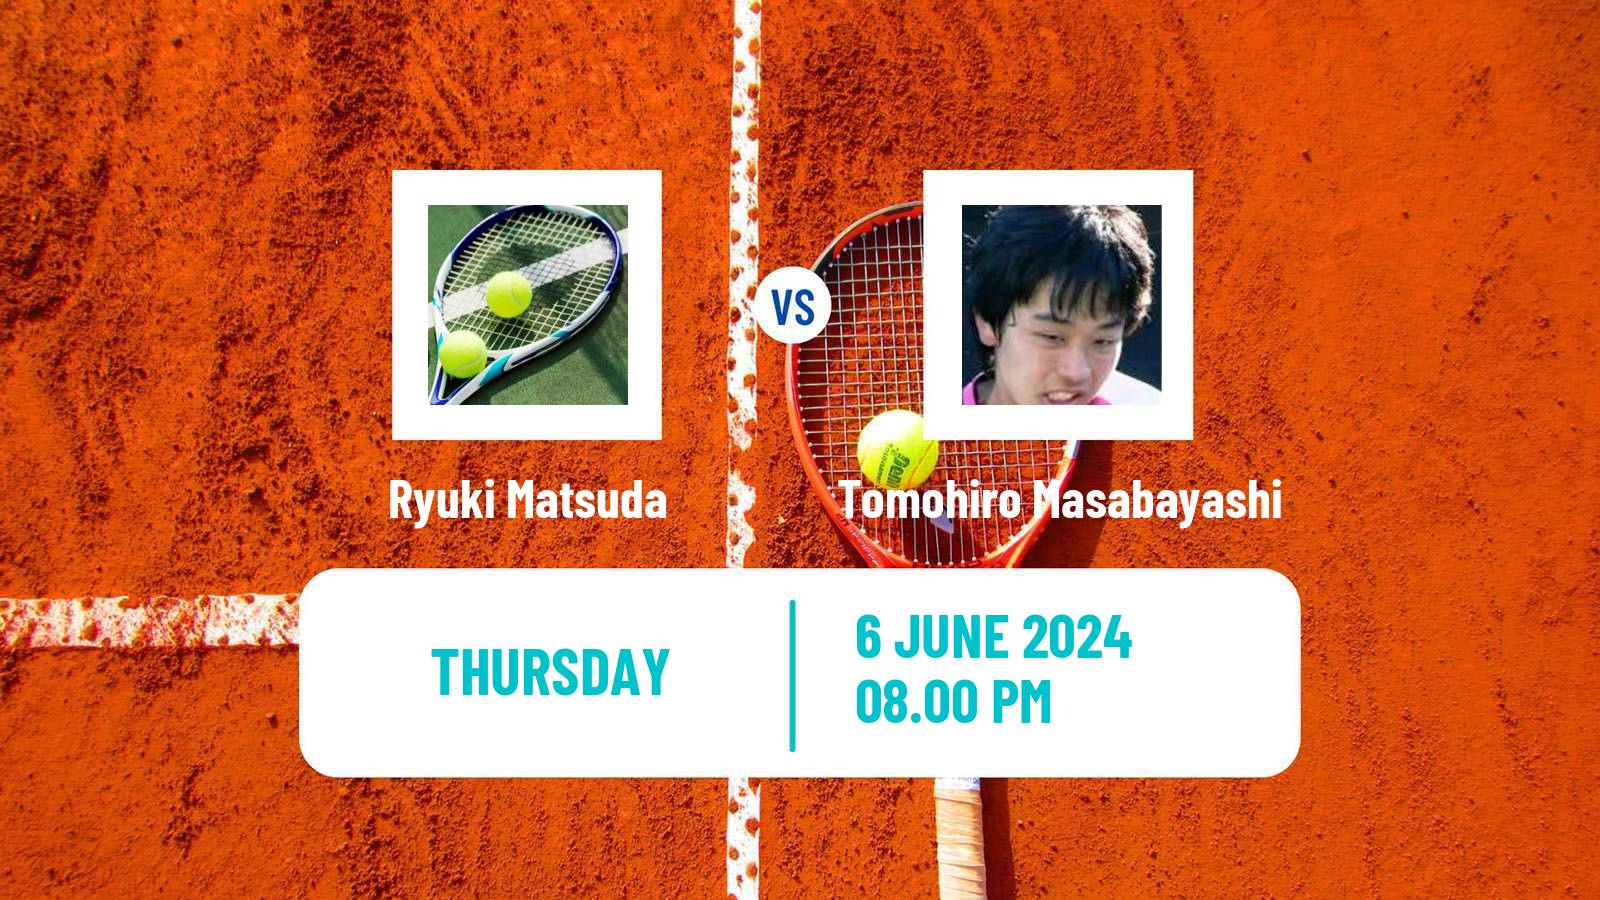 Tennis ITF M15 Harmon Men Ryuki Matsuda - Tomohiro Masabayashi